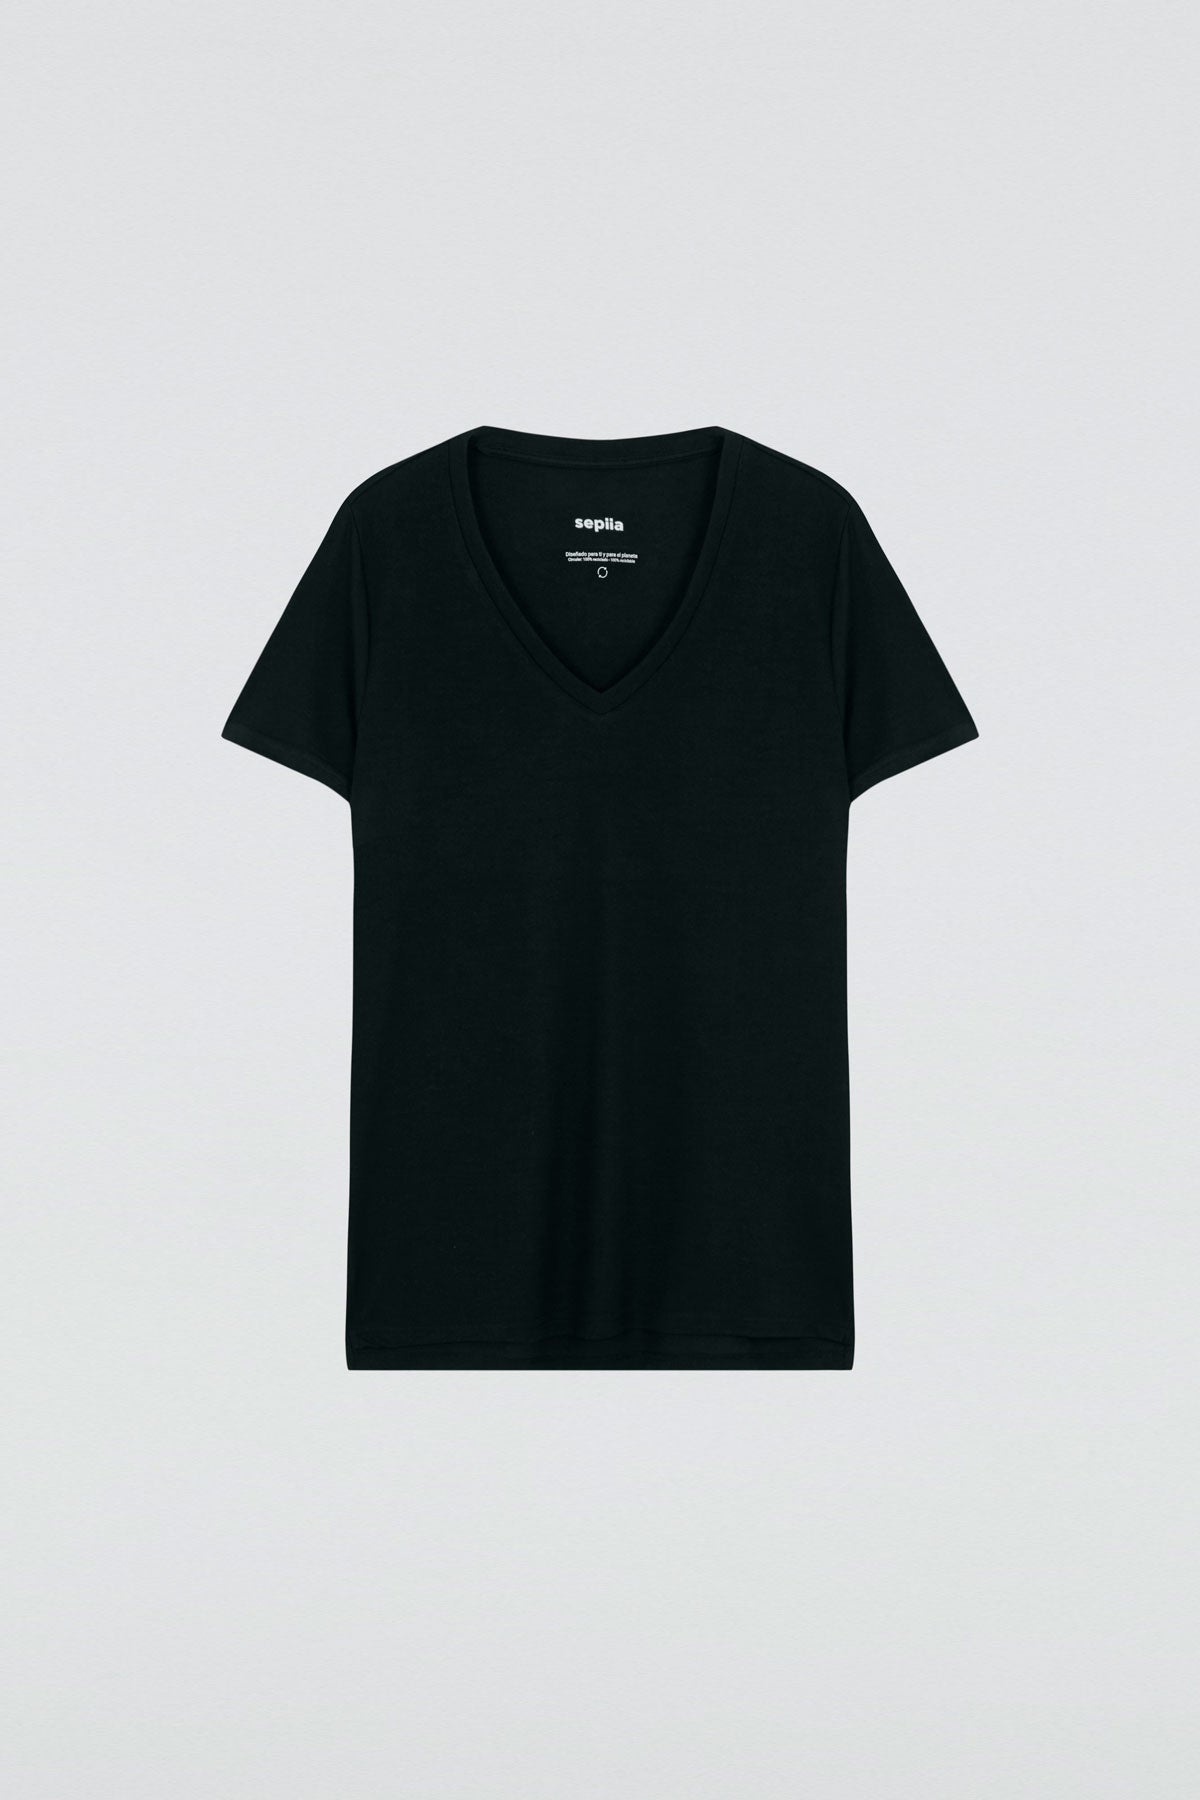 Camiseta para mujer de manga corta con escote pico color negro, básico. Foto plano